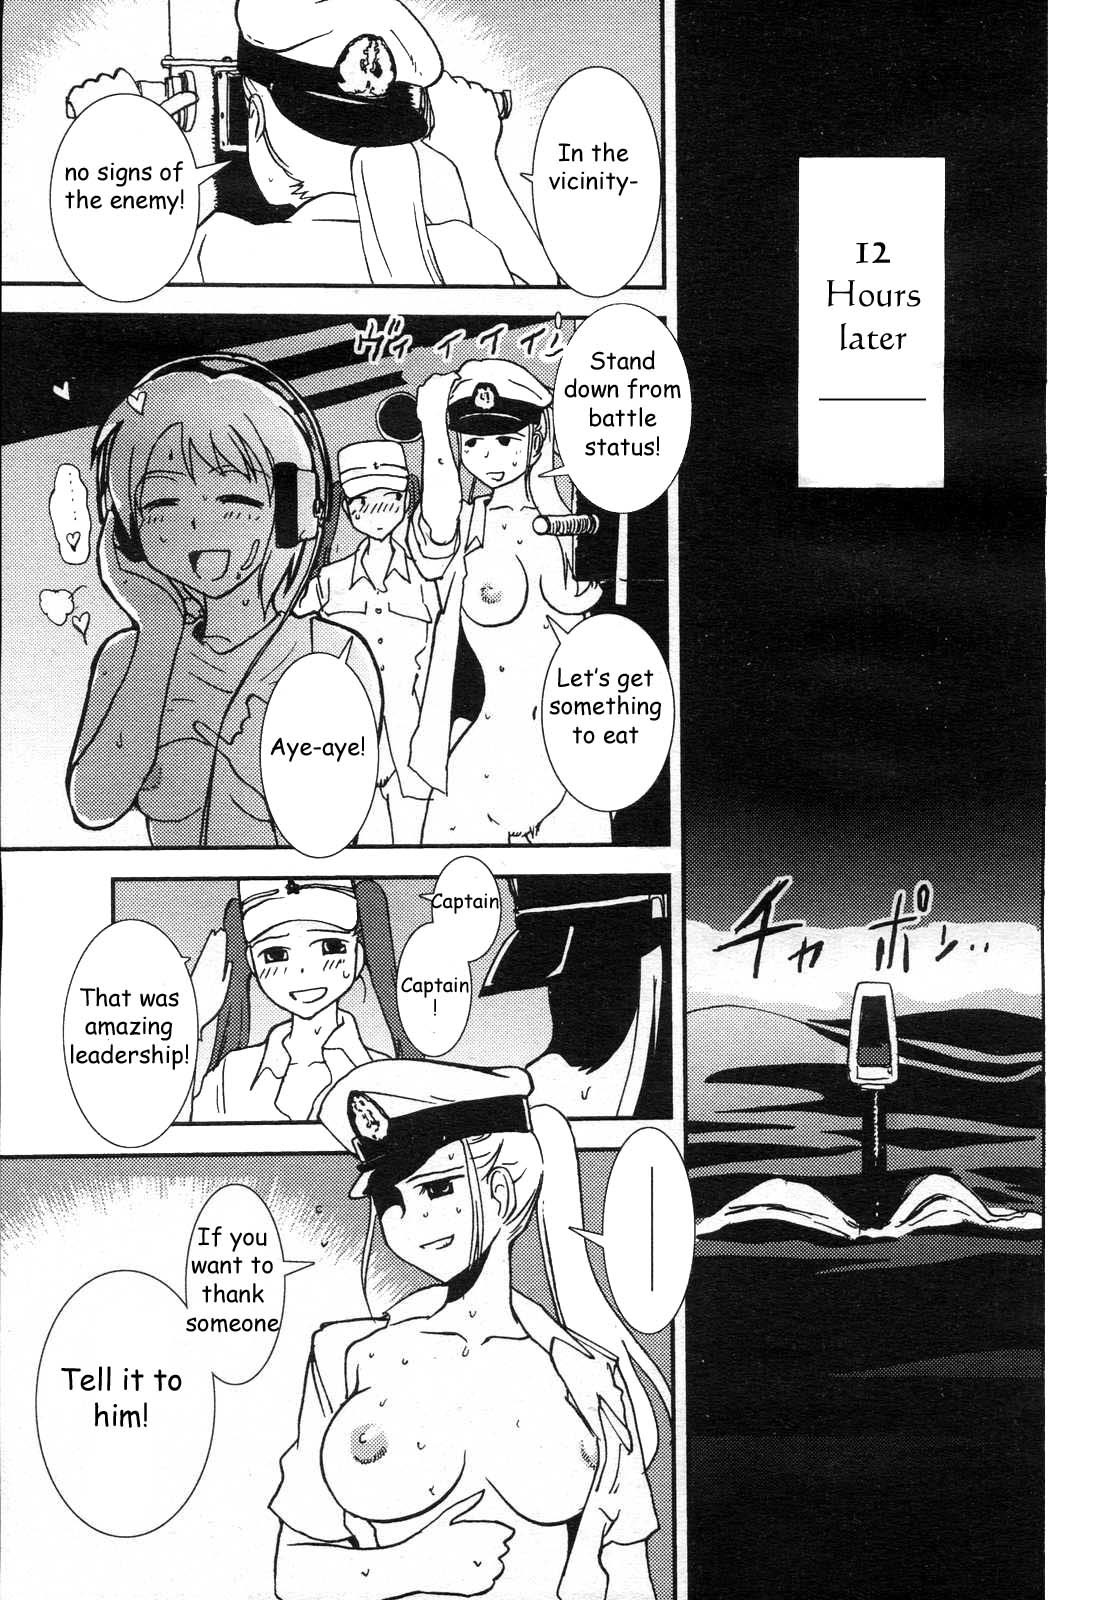 Mitsumei a.k.a. I-404 24 hentai manga